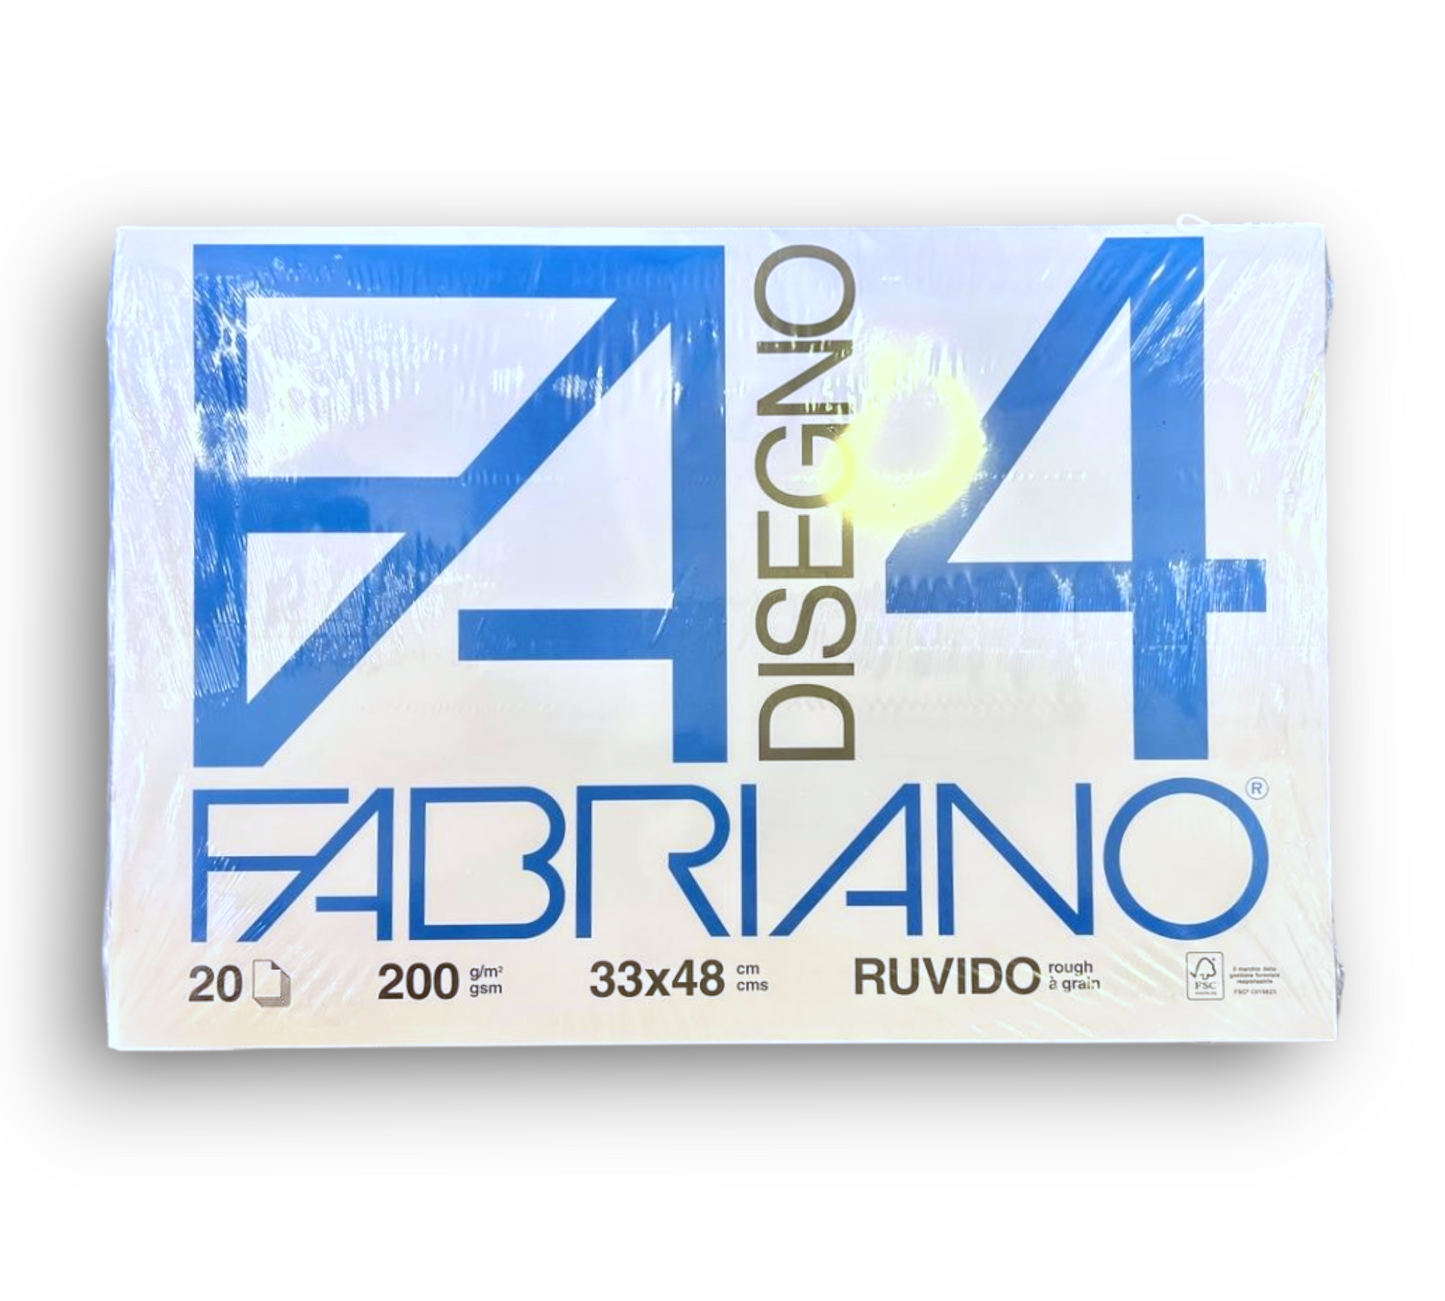 FABRIANO F4 - 33x48 220gr RUVIDO – Cartoleria Barbieri di Turelli